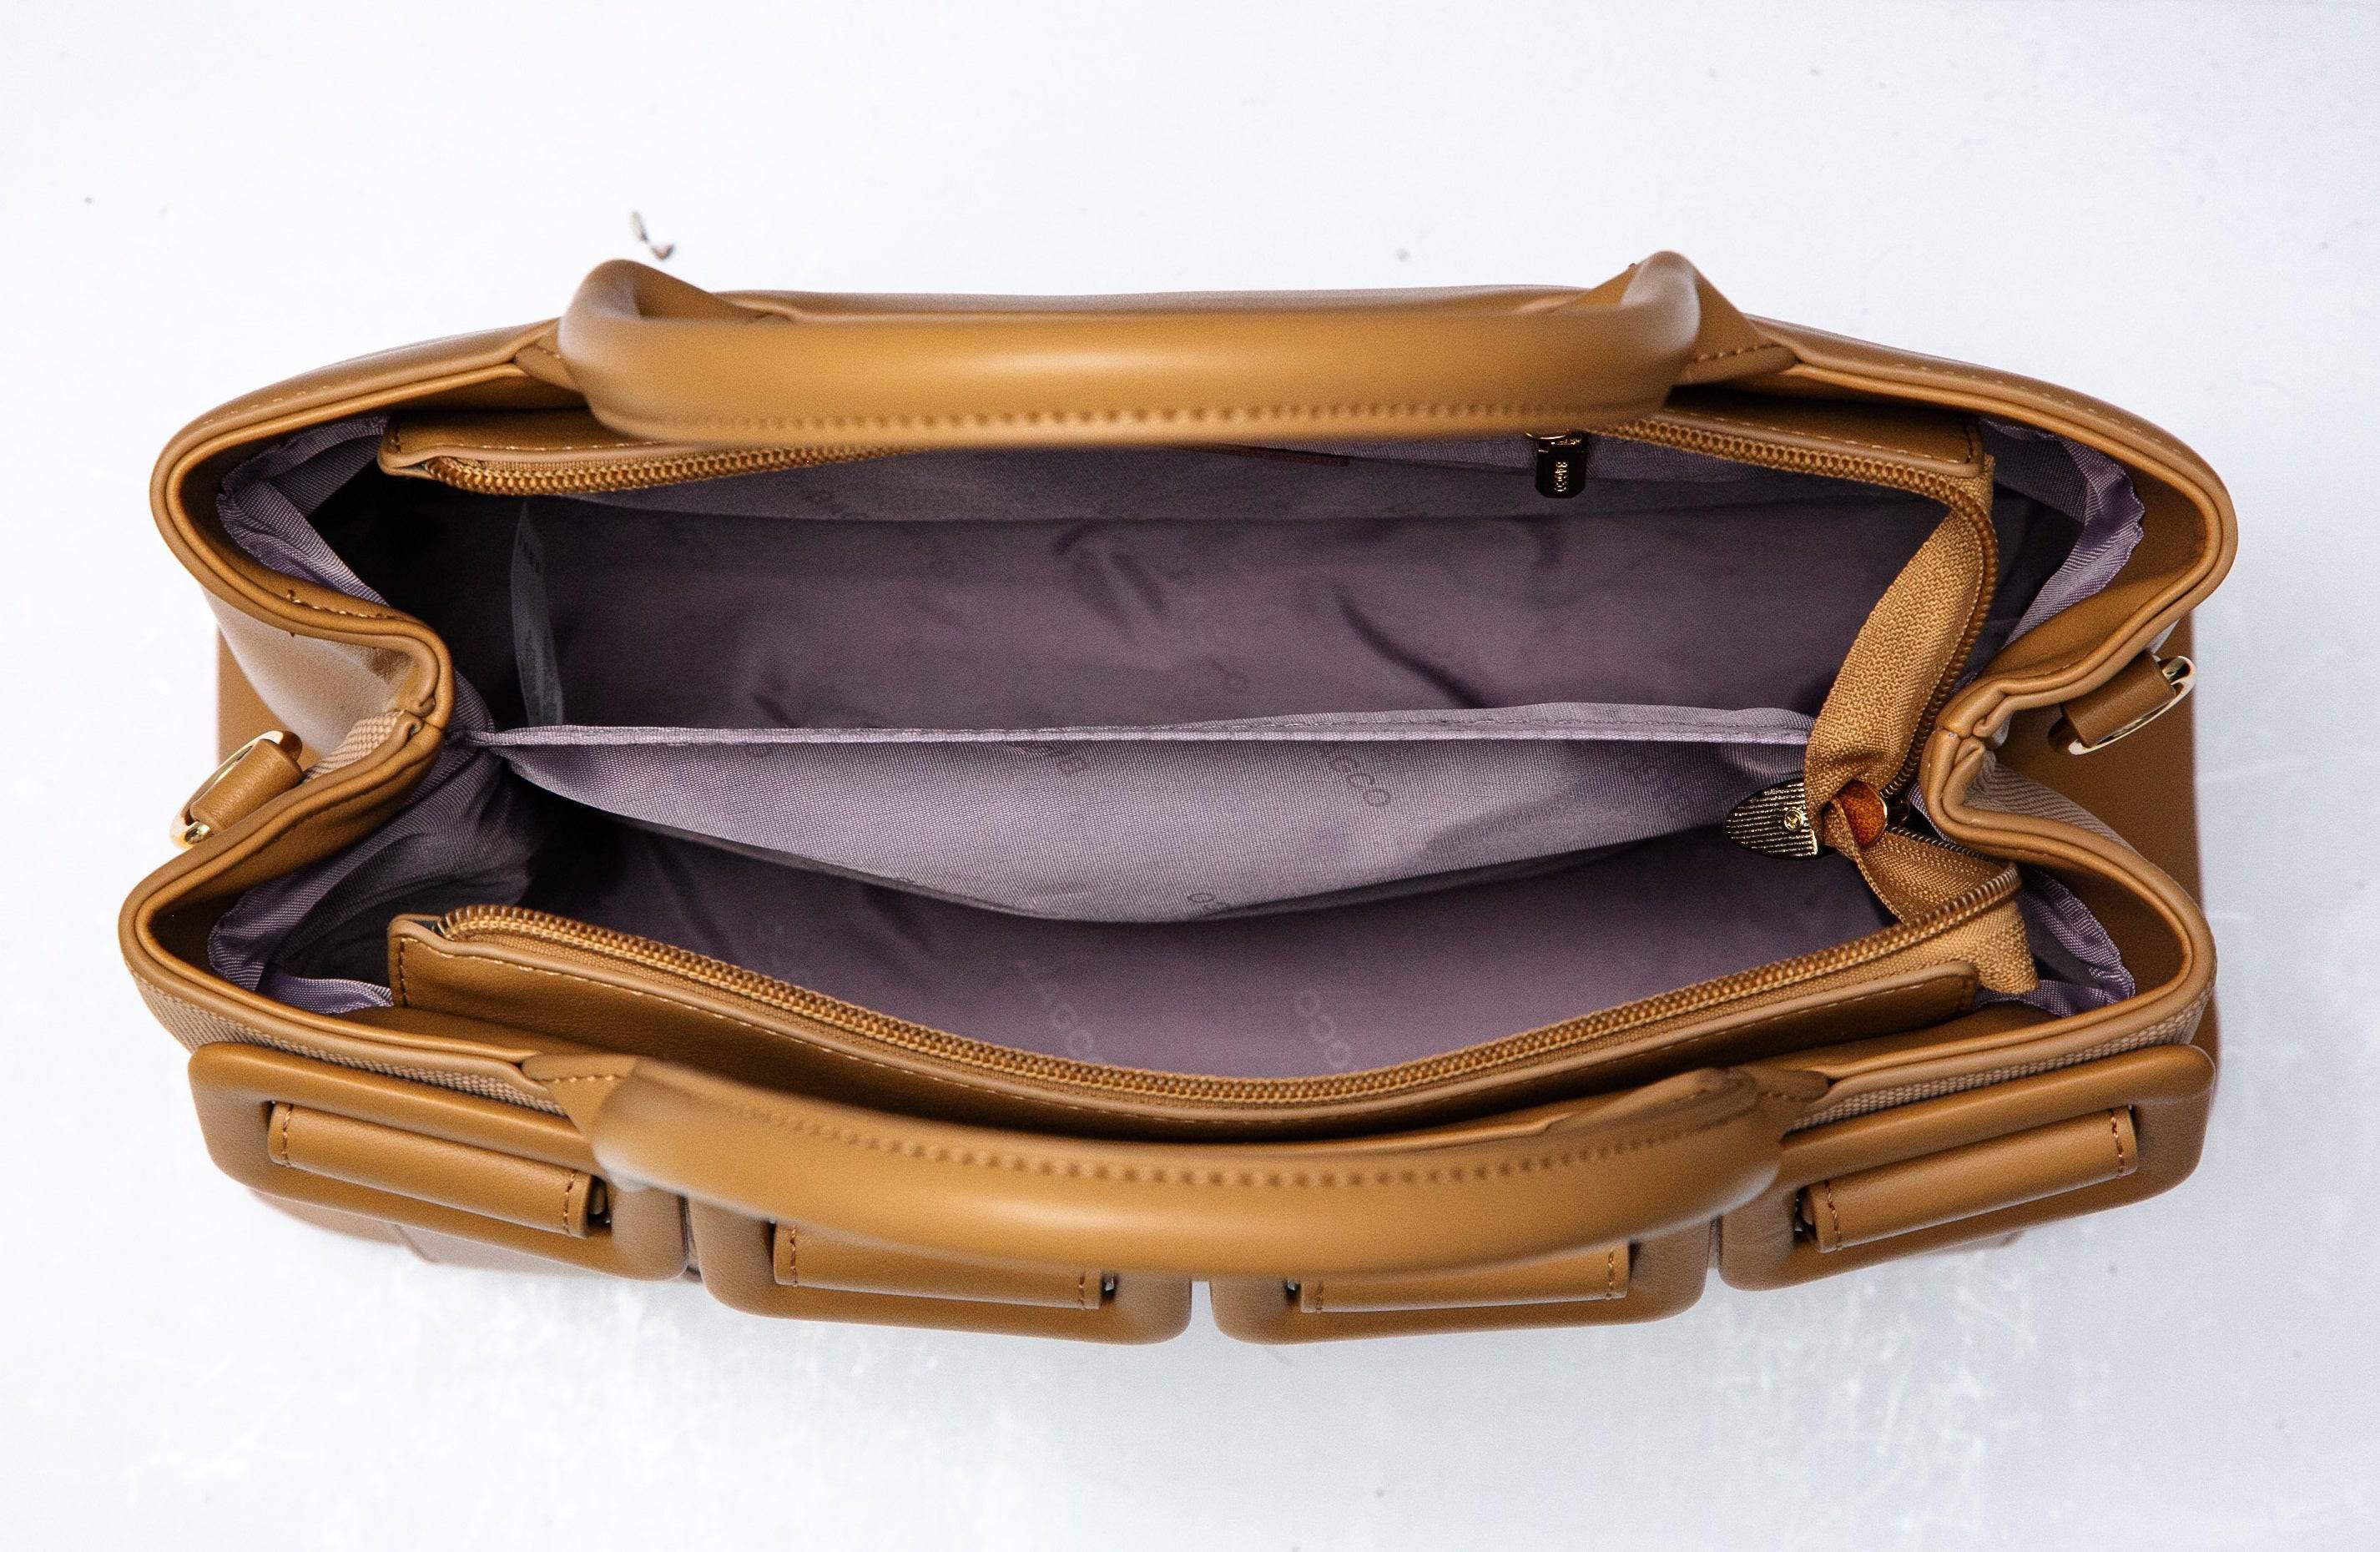 حقيبة نسائية فخمة باللون العنابى مناسبة لأوقات العمل والاحتفالات . - KSA